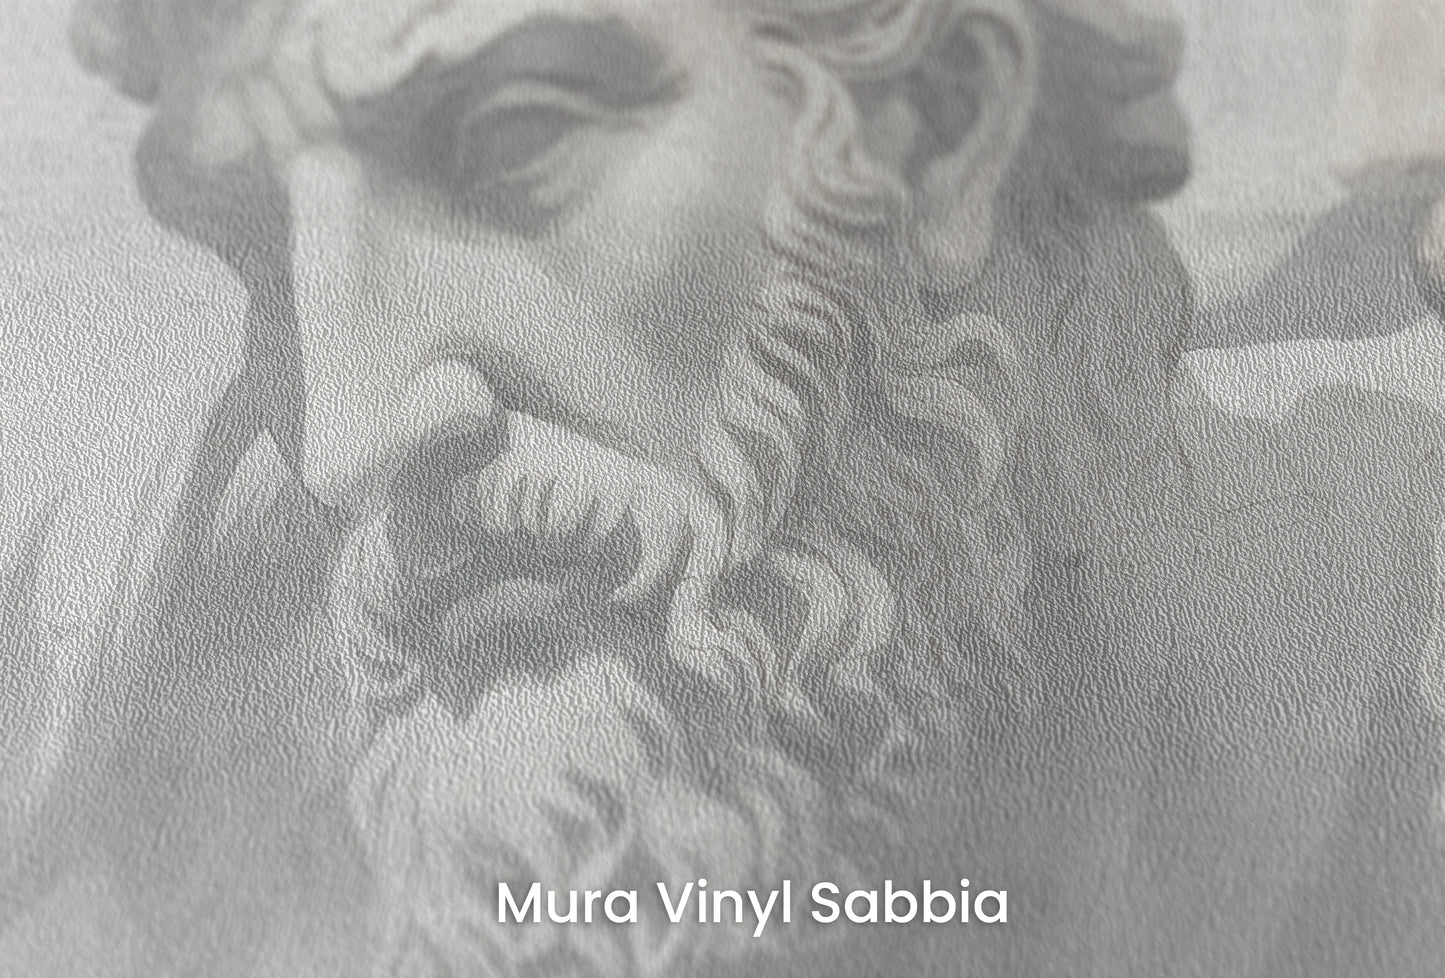 Zbliżenie na artystyczną fototapetę o nazwie Stoic Trio na podłożu Mura Vinyl Sabbia struktura grubego ziarna piasku.